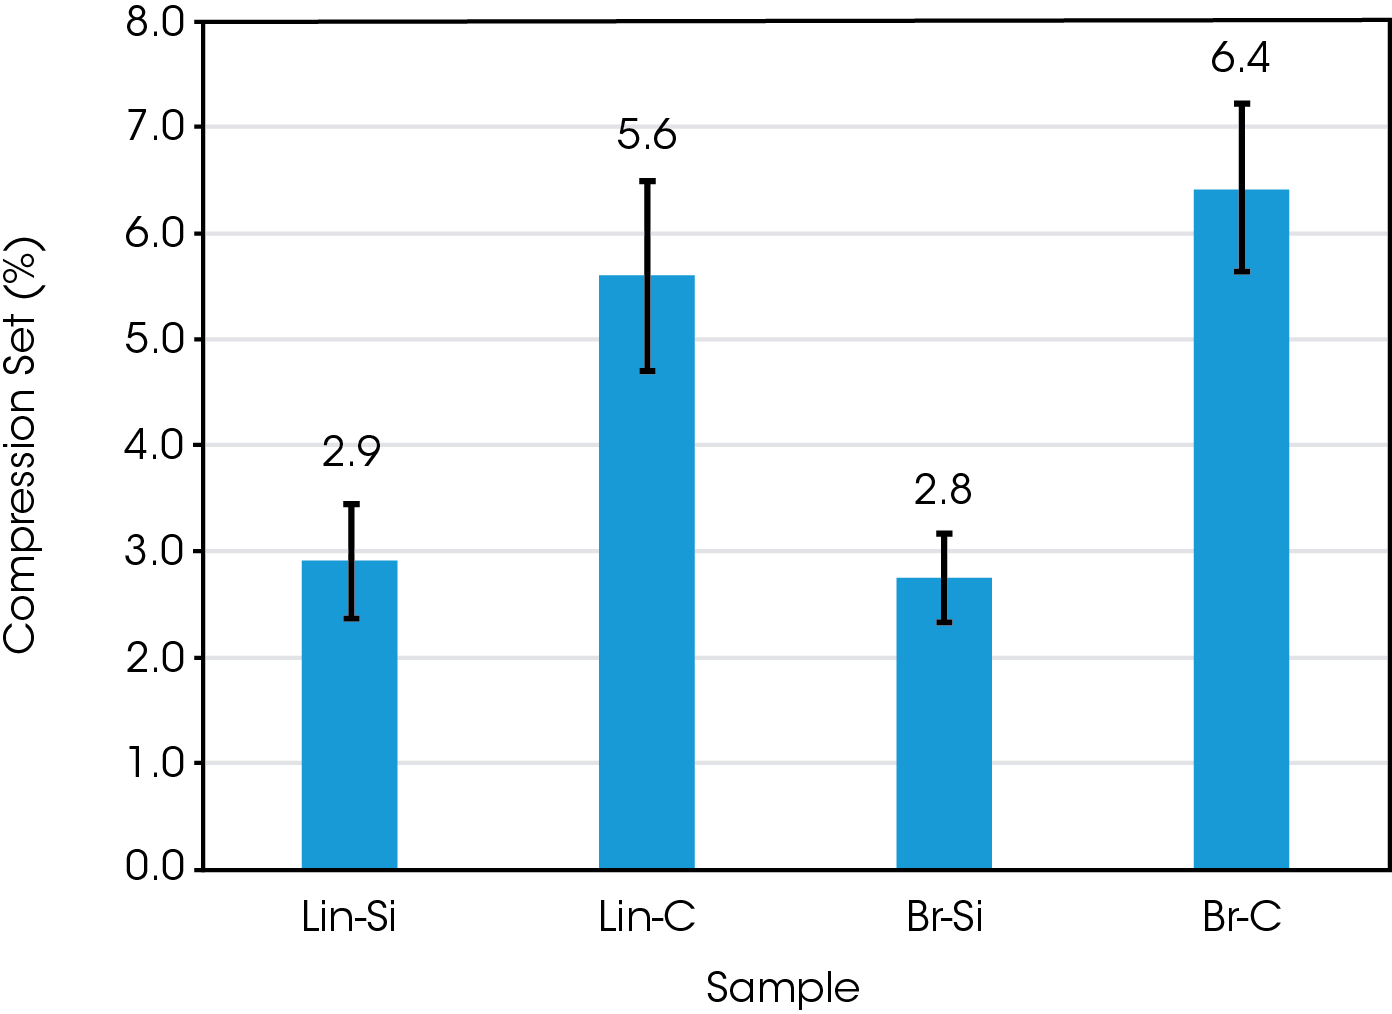 Figure 7. Average compression set measured after HBU test. Vertical bars indicate standard deviation.